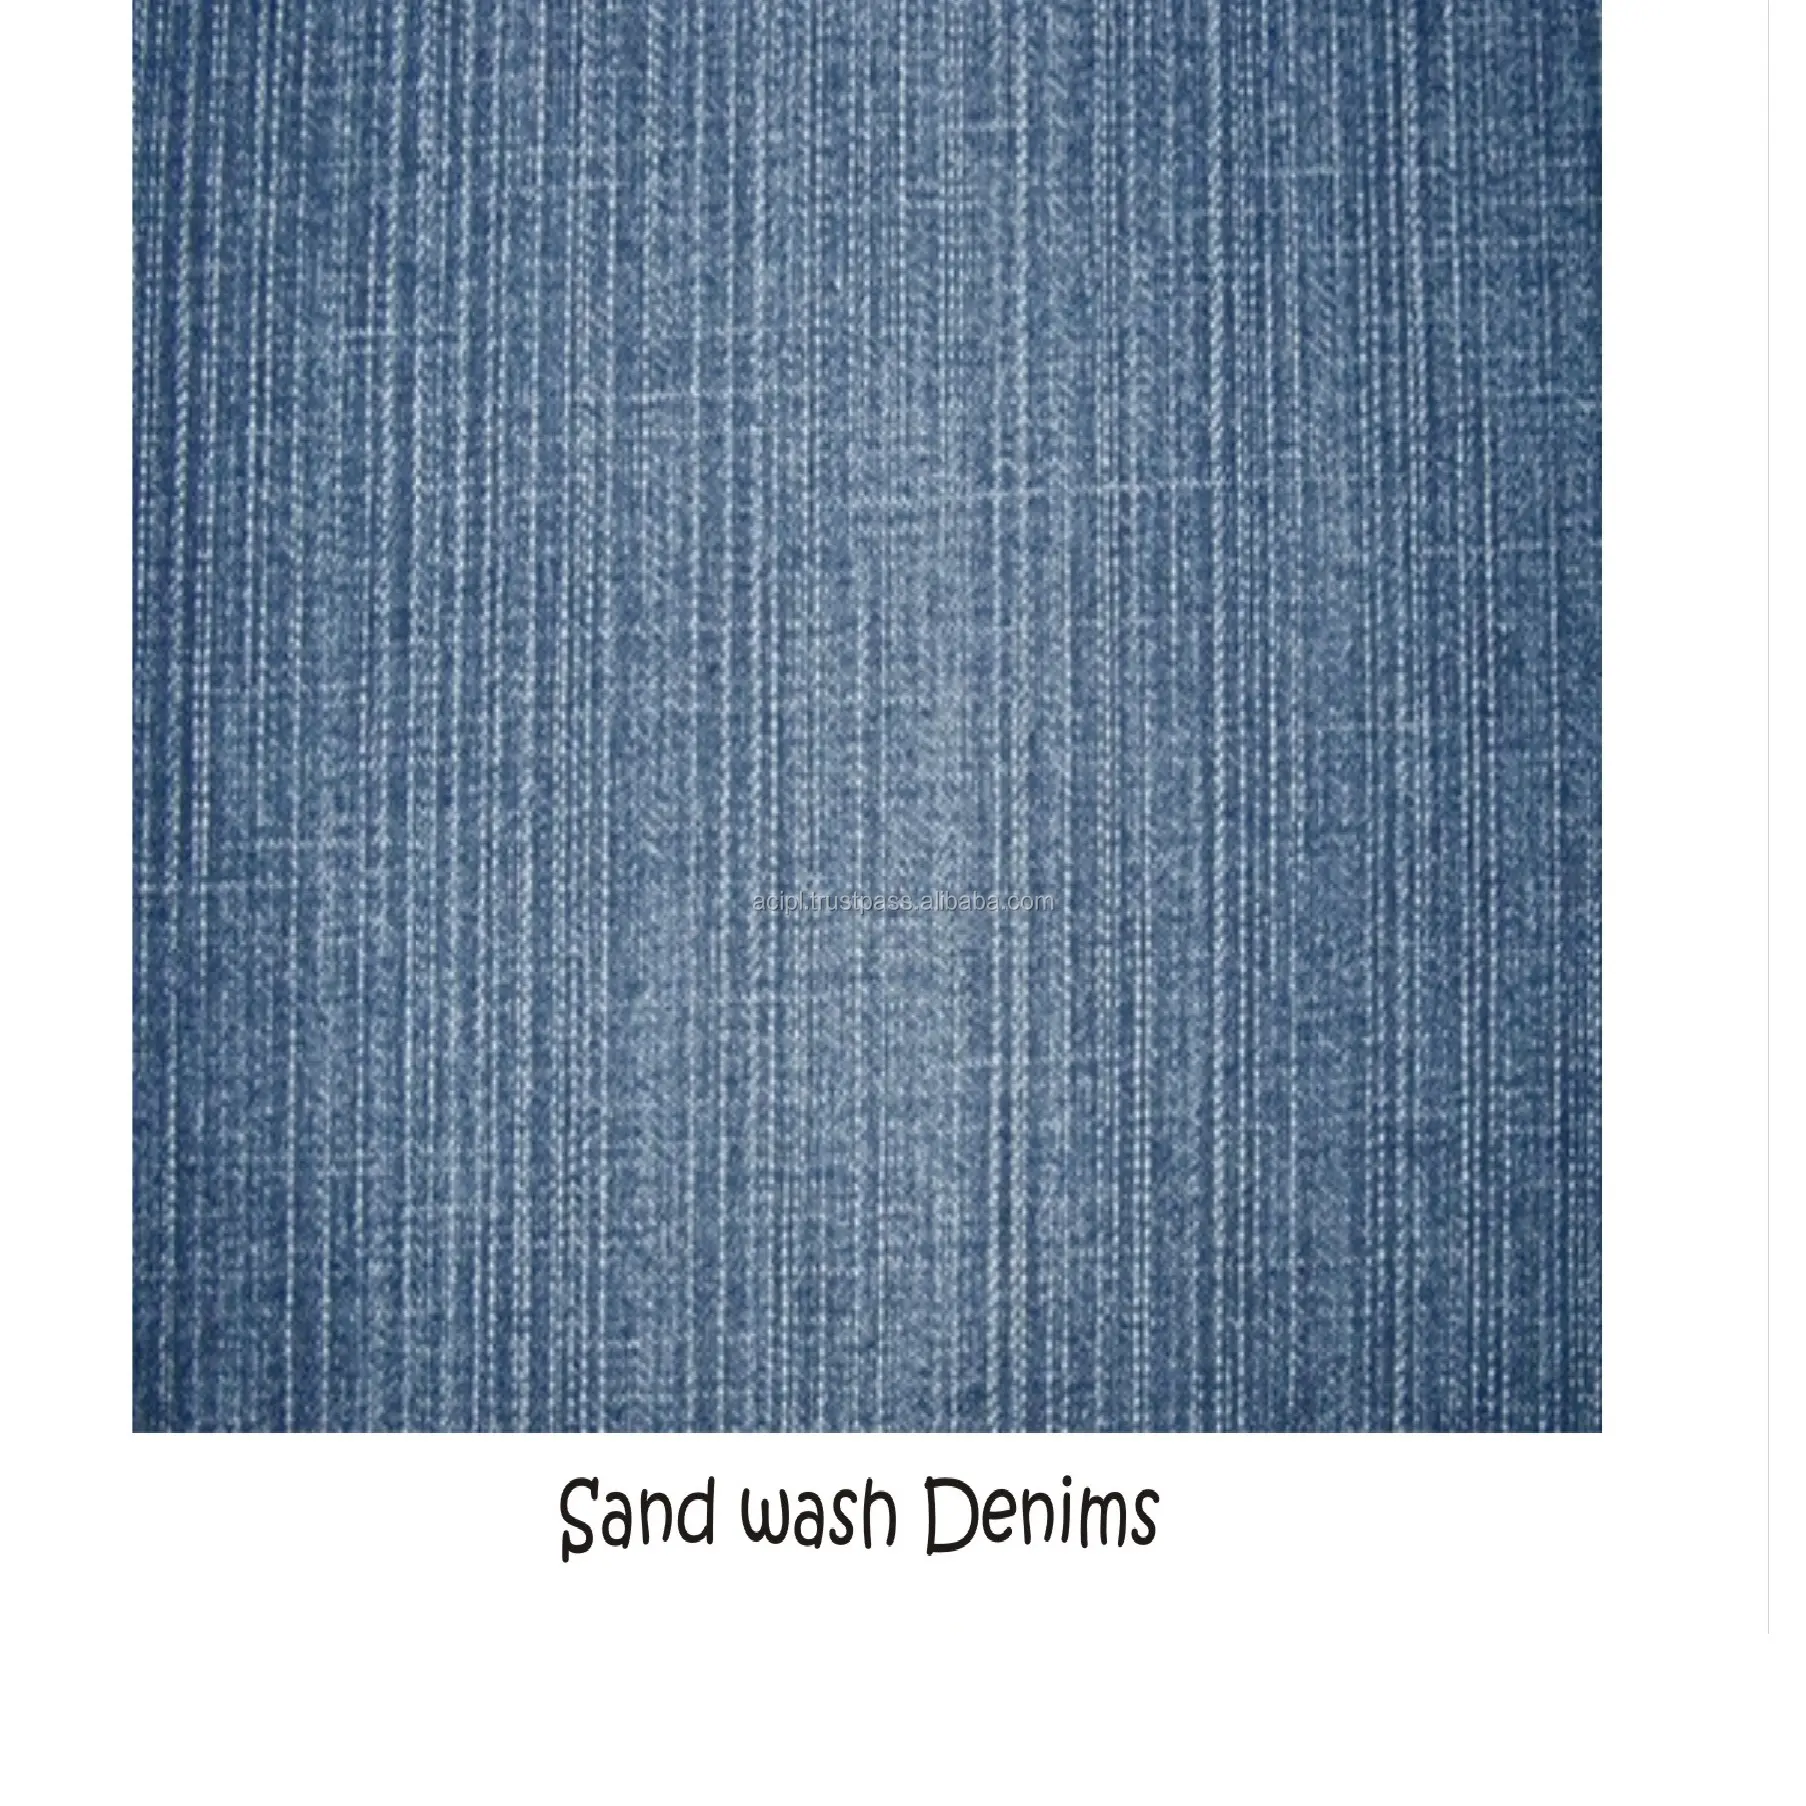 Klasik mavi renkli Premium kaliteli Denim kumaş, toplu ambalajda mevcut denim ile ilişkili en yaygın renk